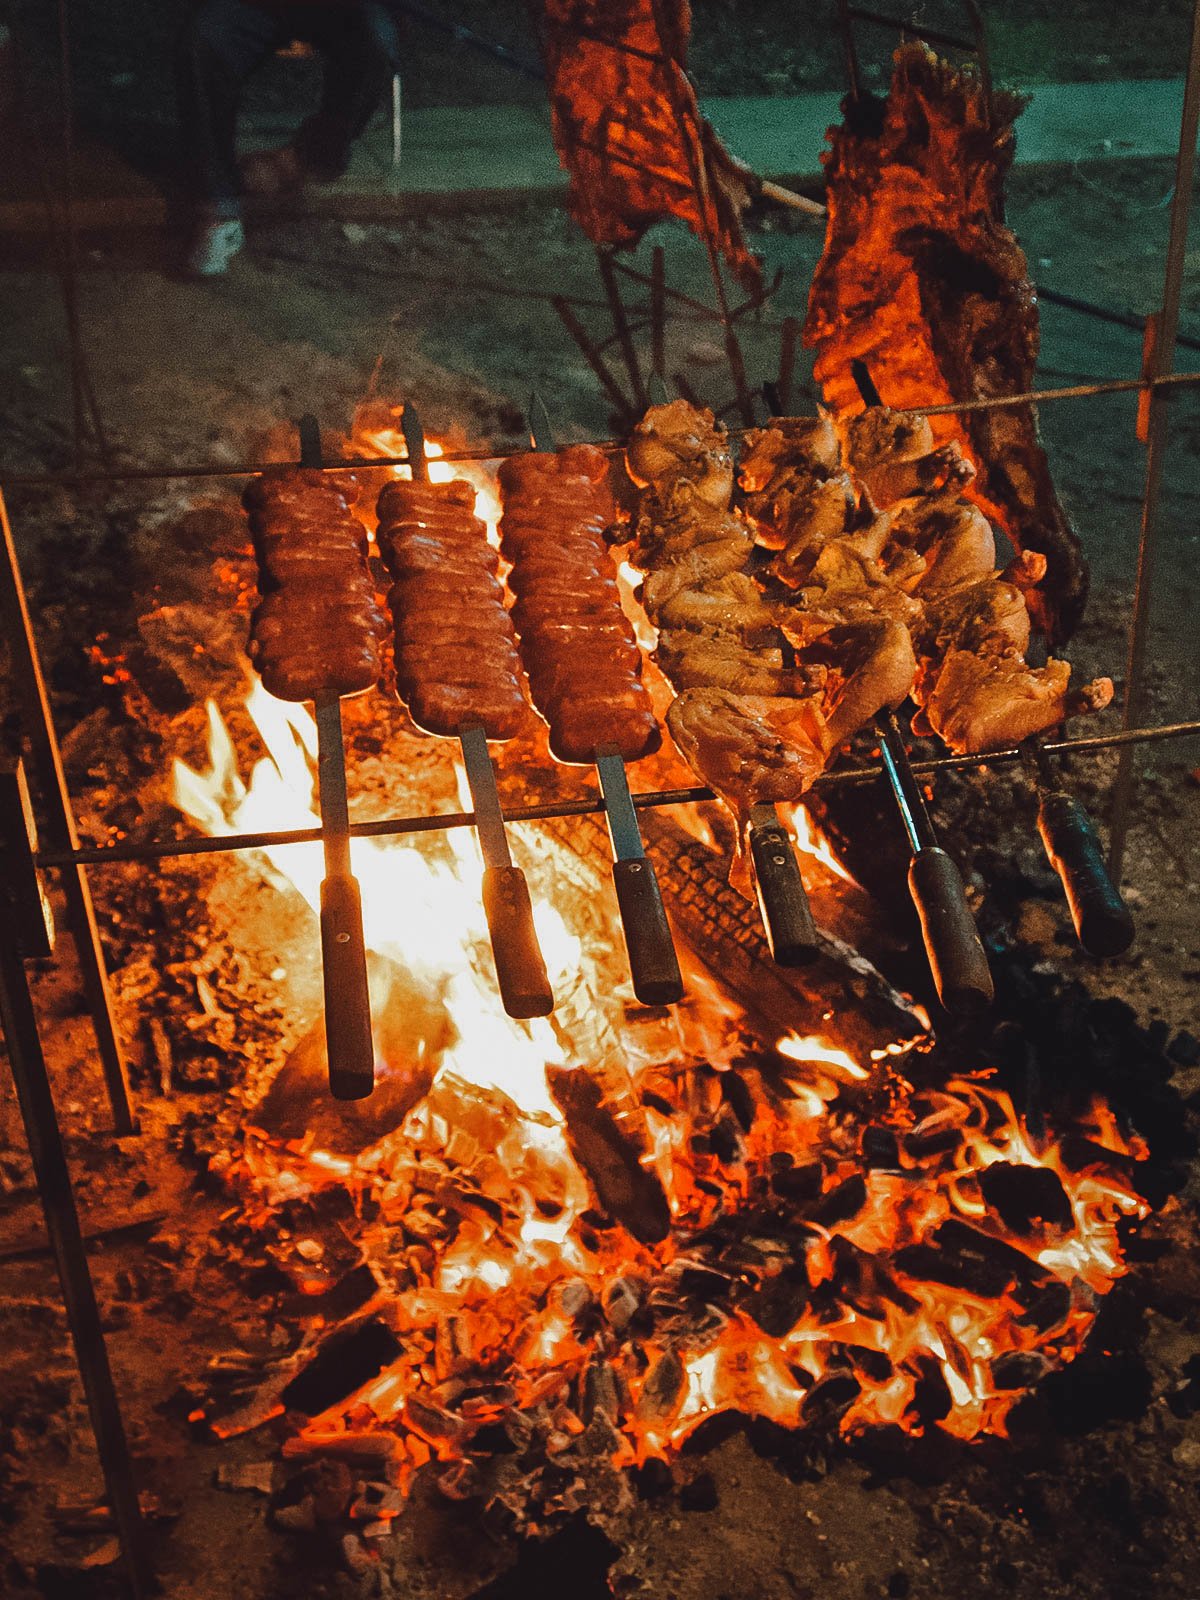  Viandes Churrasco grillées au feu, l'une des plus délicieuses traditions brésiliennes 